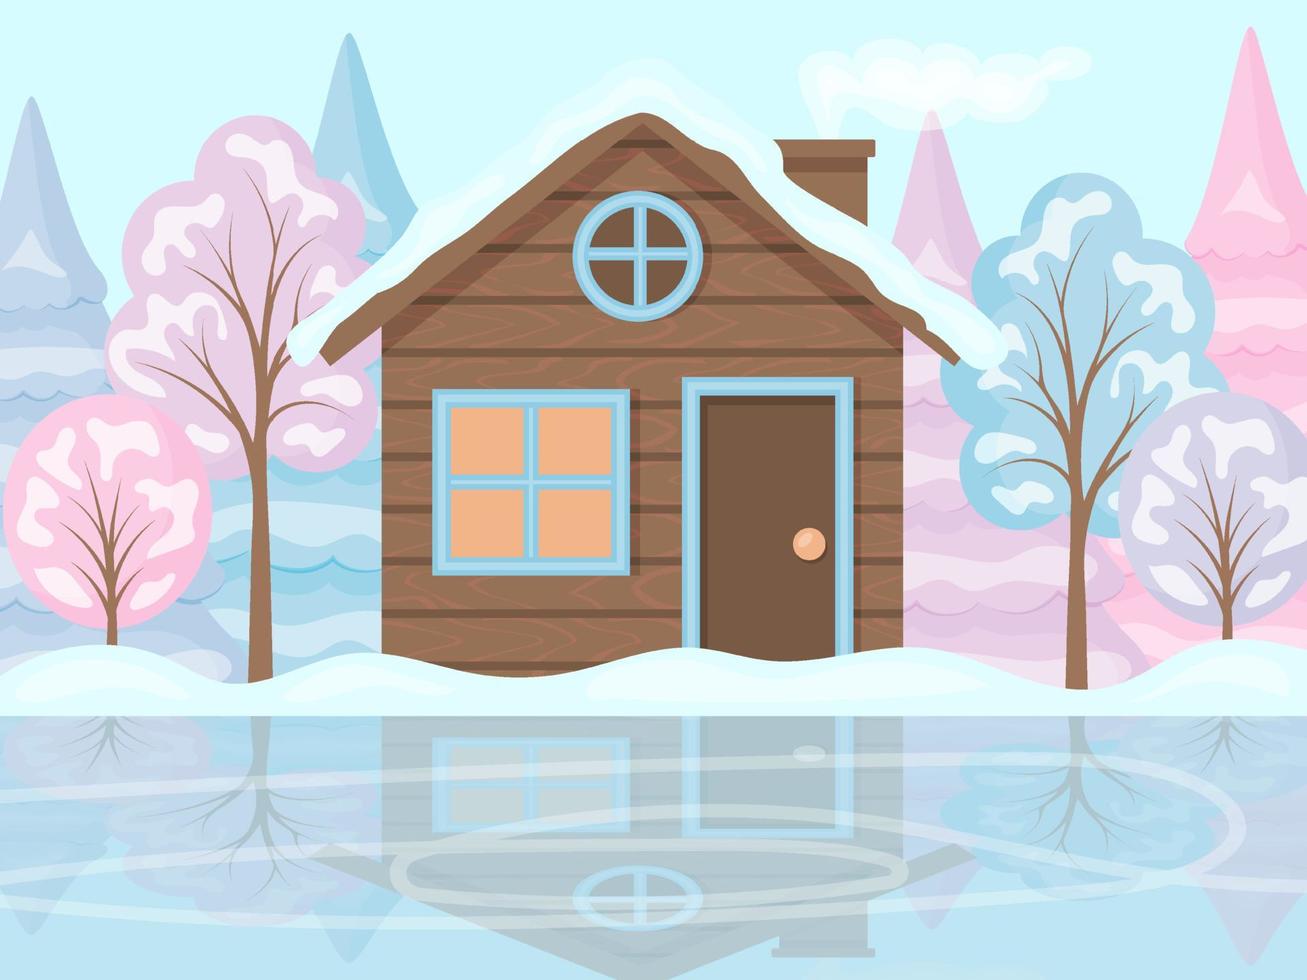 paisagem de inverno. uma casa e árvores na neve, ao lado de um rinque de patinação. a margem de um lago congelado. estilo dos desenhos animados, ilustração vetorial. vetor